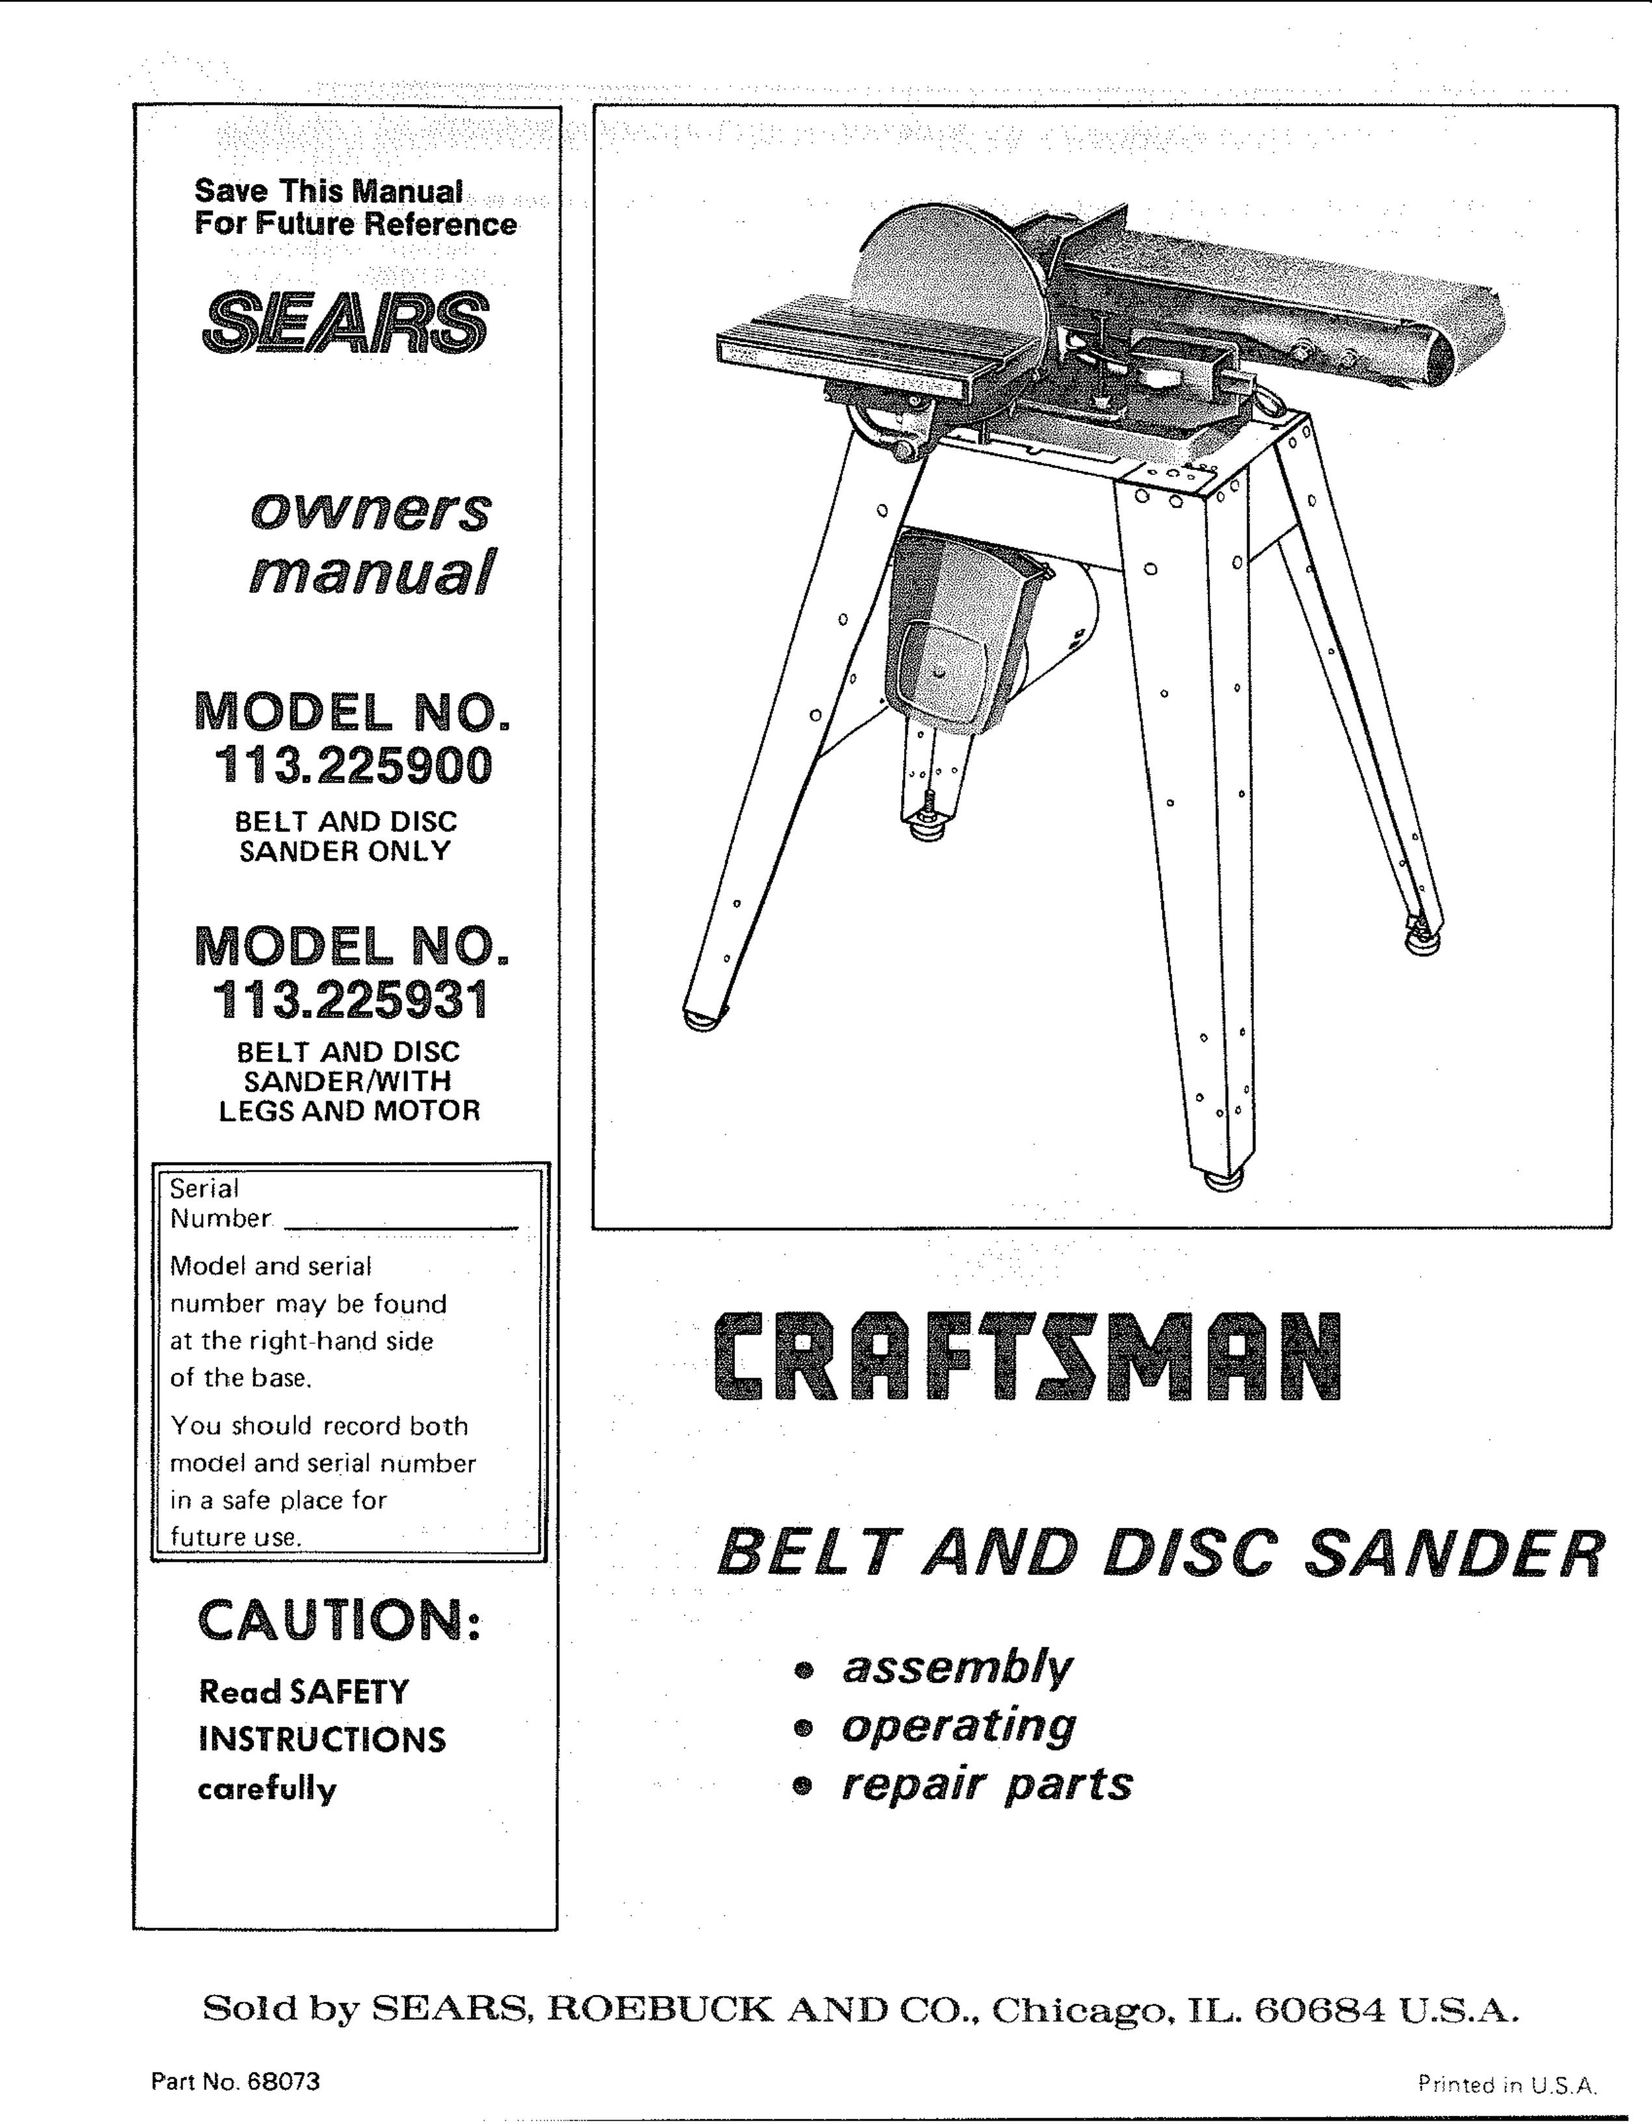 Craftsman 113.225909 Sander User Manual